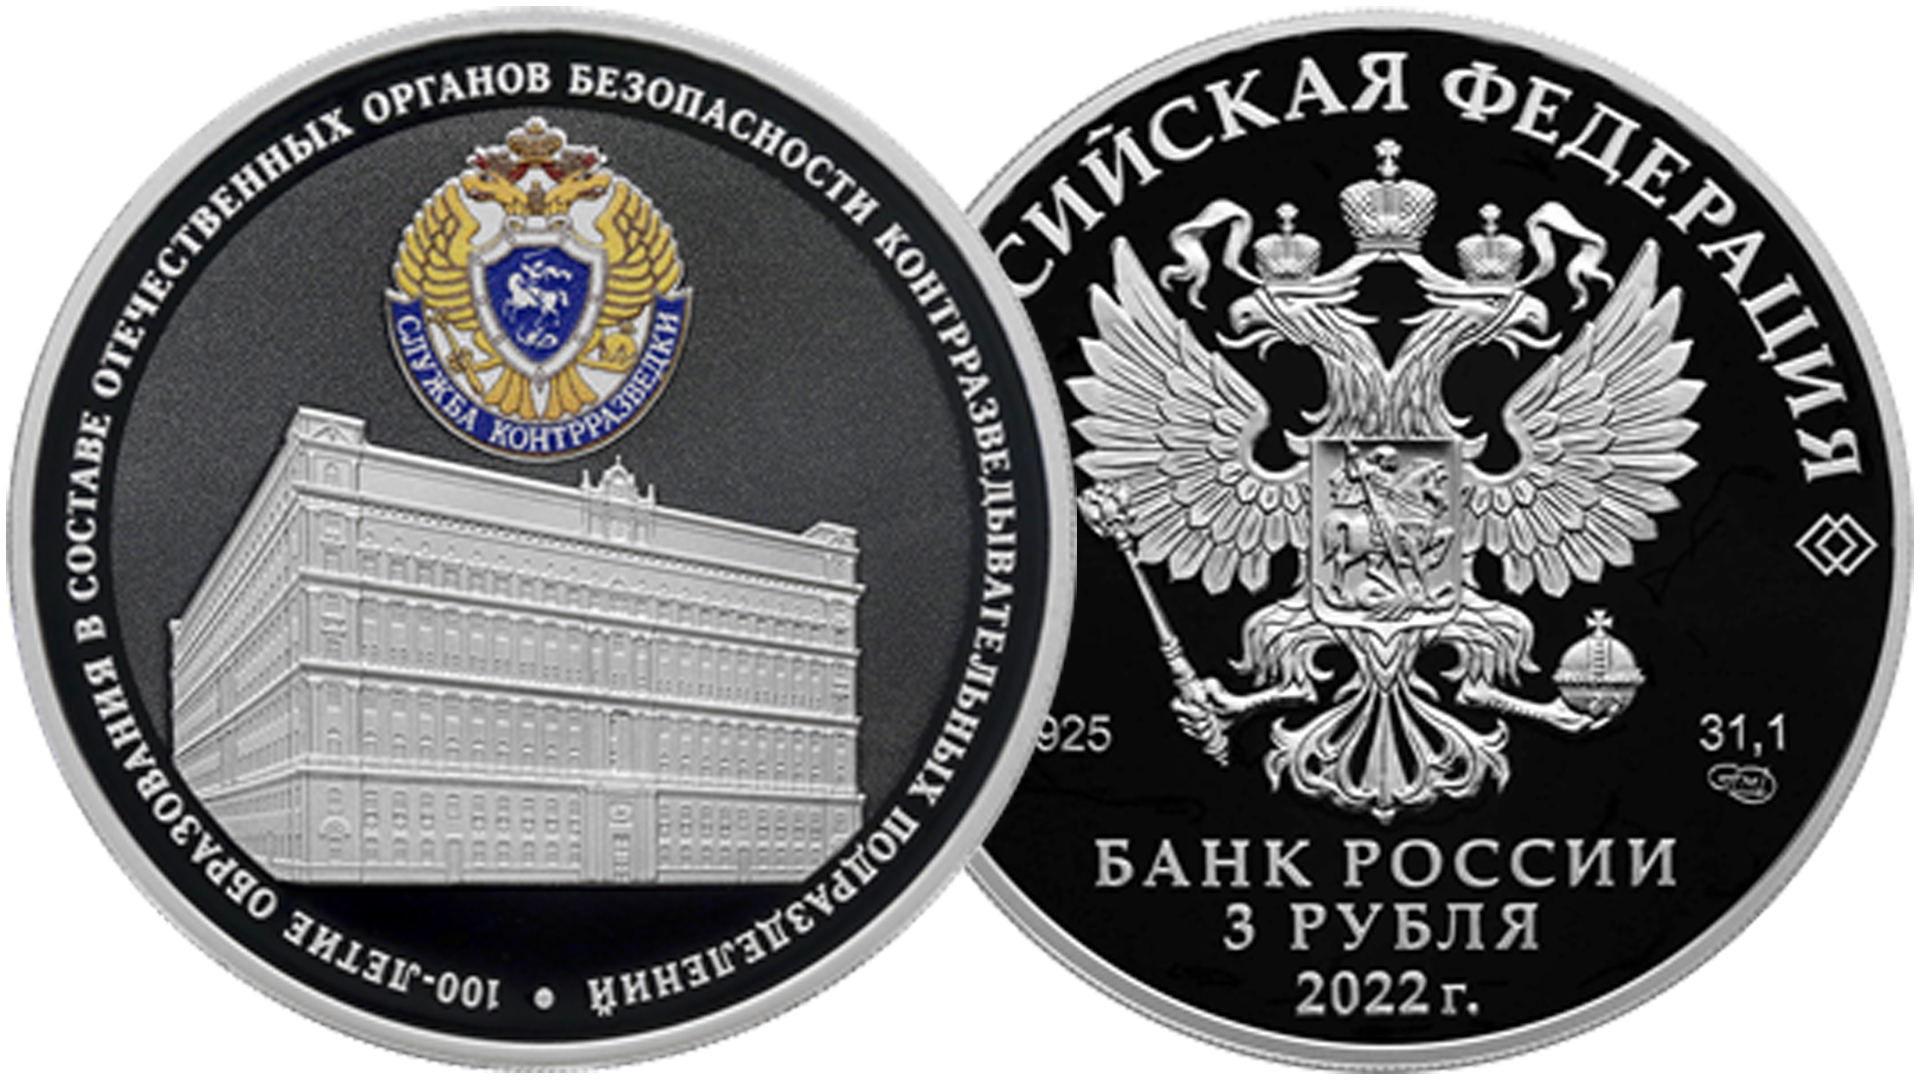 Новая памятная монета России номиналом 3 рубля.